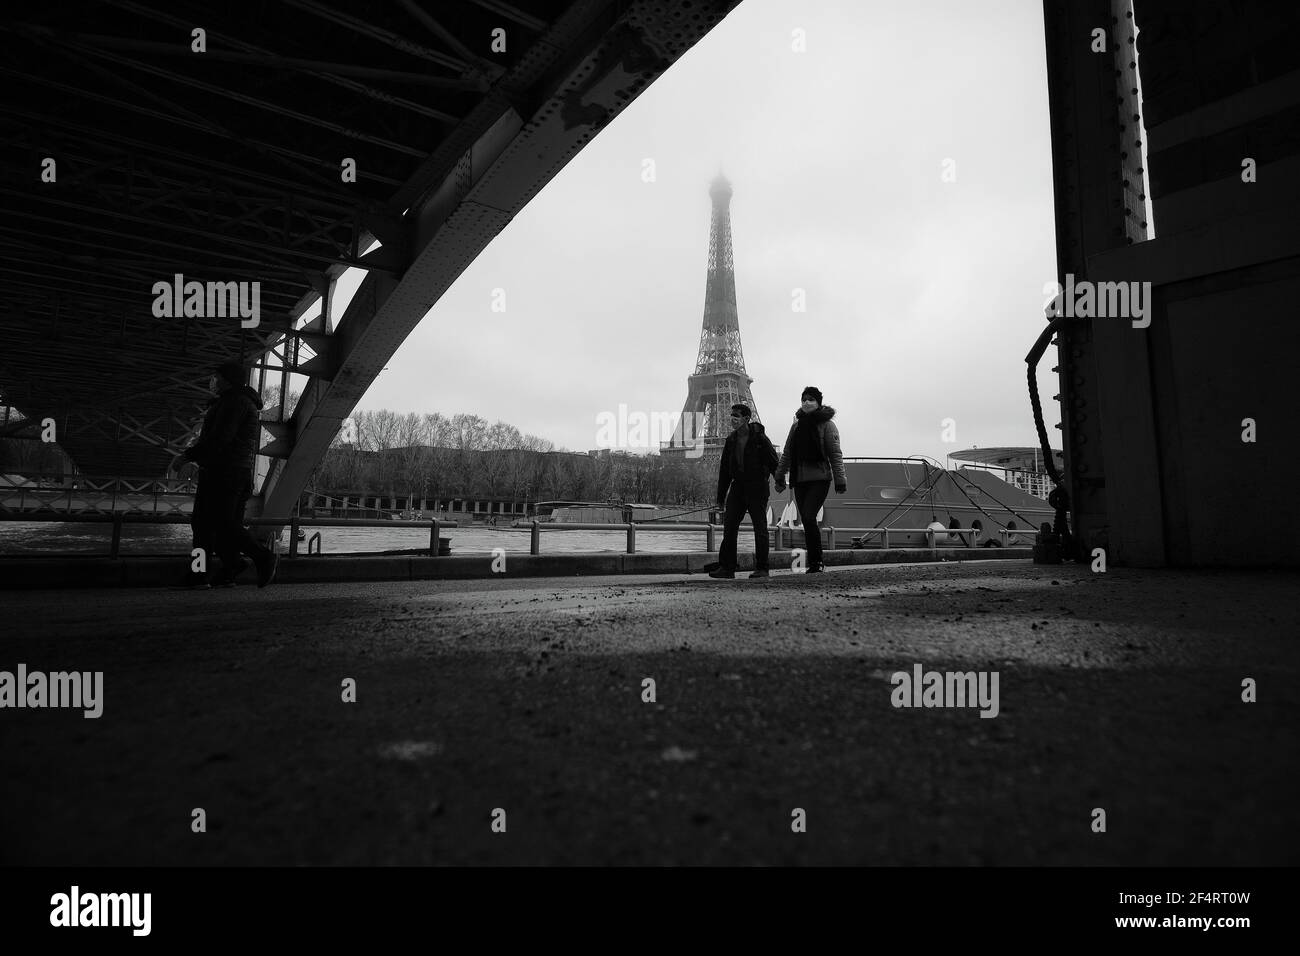 Paris, France - 31 janvier 2021 : UN couple portant des masques, marchant sous un pont près de la tour Eiffel à Paris, en noir et blanc Banque D'Images